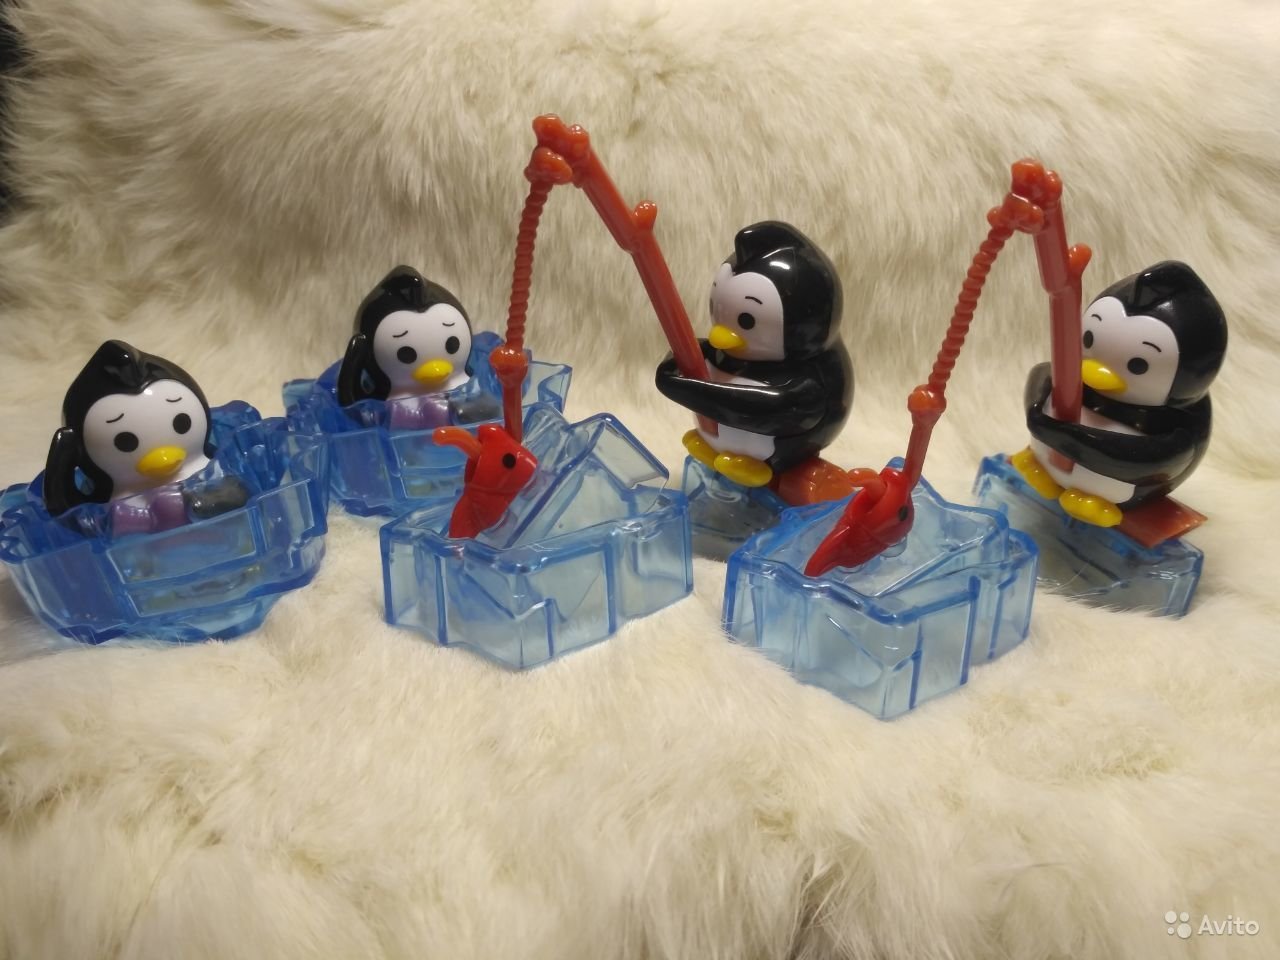 Киндер макси пингвины. Киндер макси пингвины игрушки. Коллекция пингвинов из Киндер макси. Киндер Пингвин на бревне. Киндер игрушки пингвины